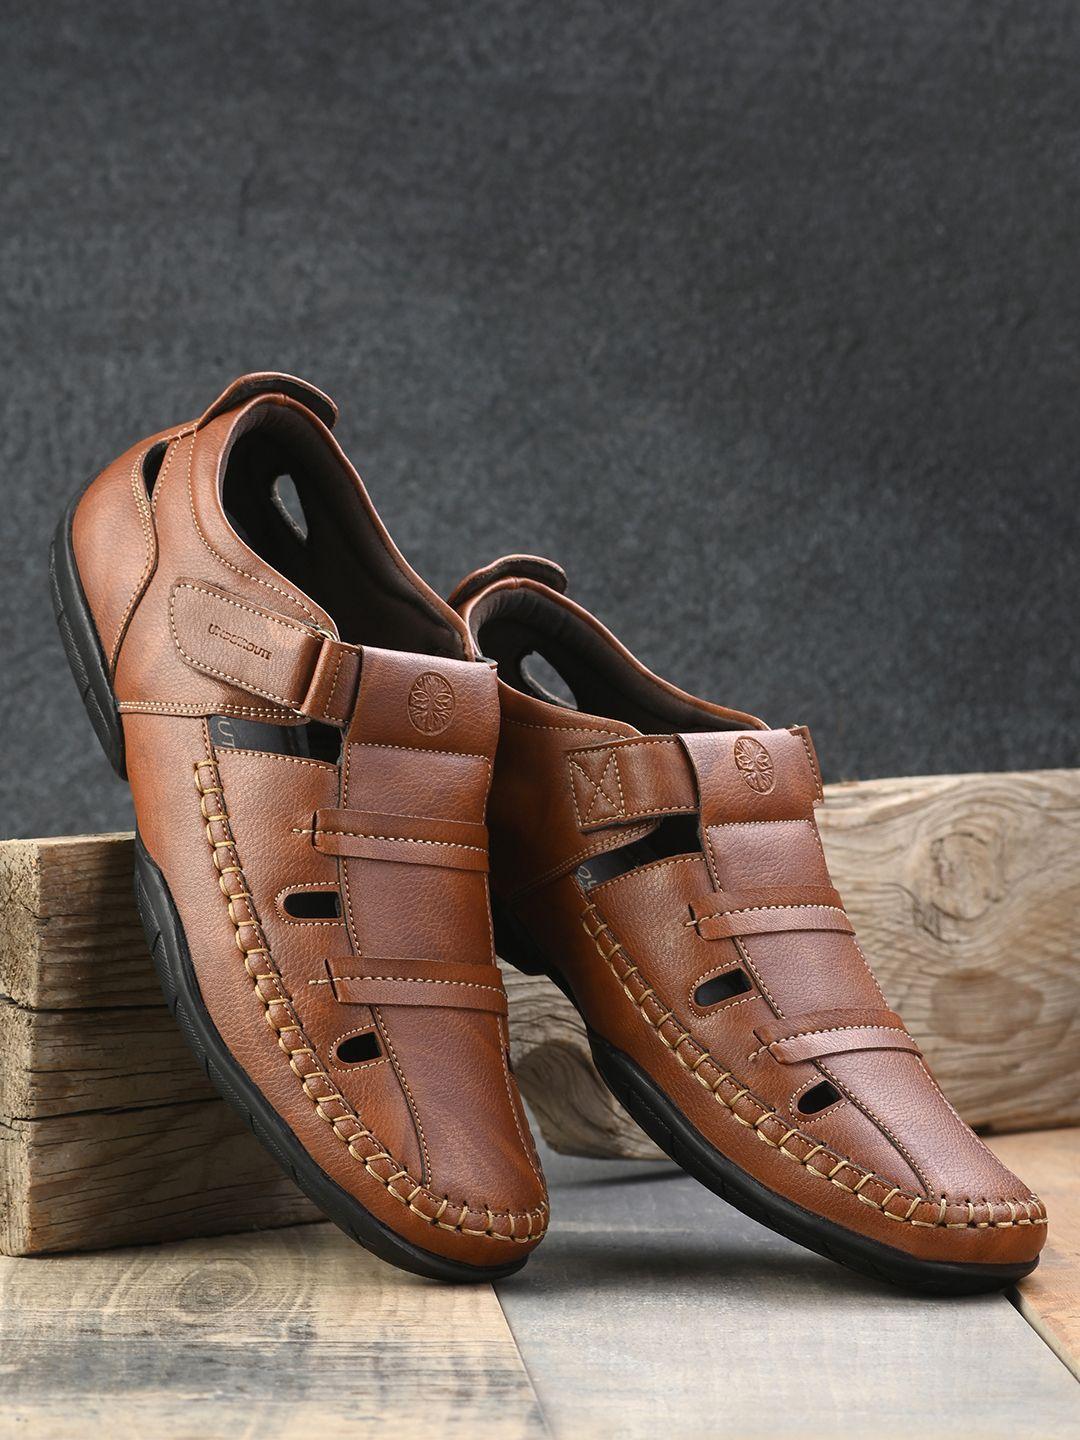 underroute-men-tan-solid-pu-shoe-style-sandals